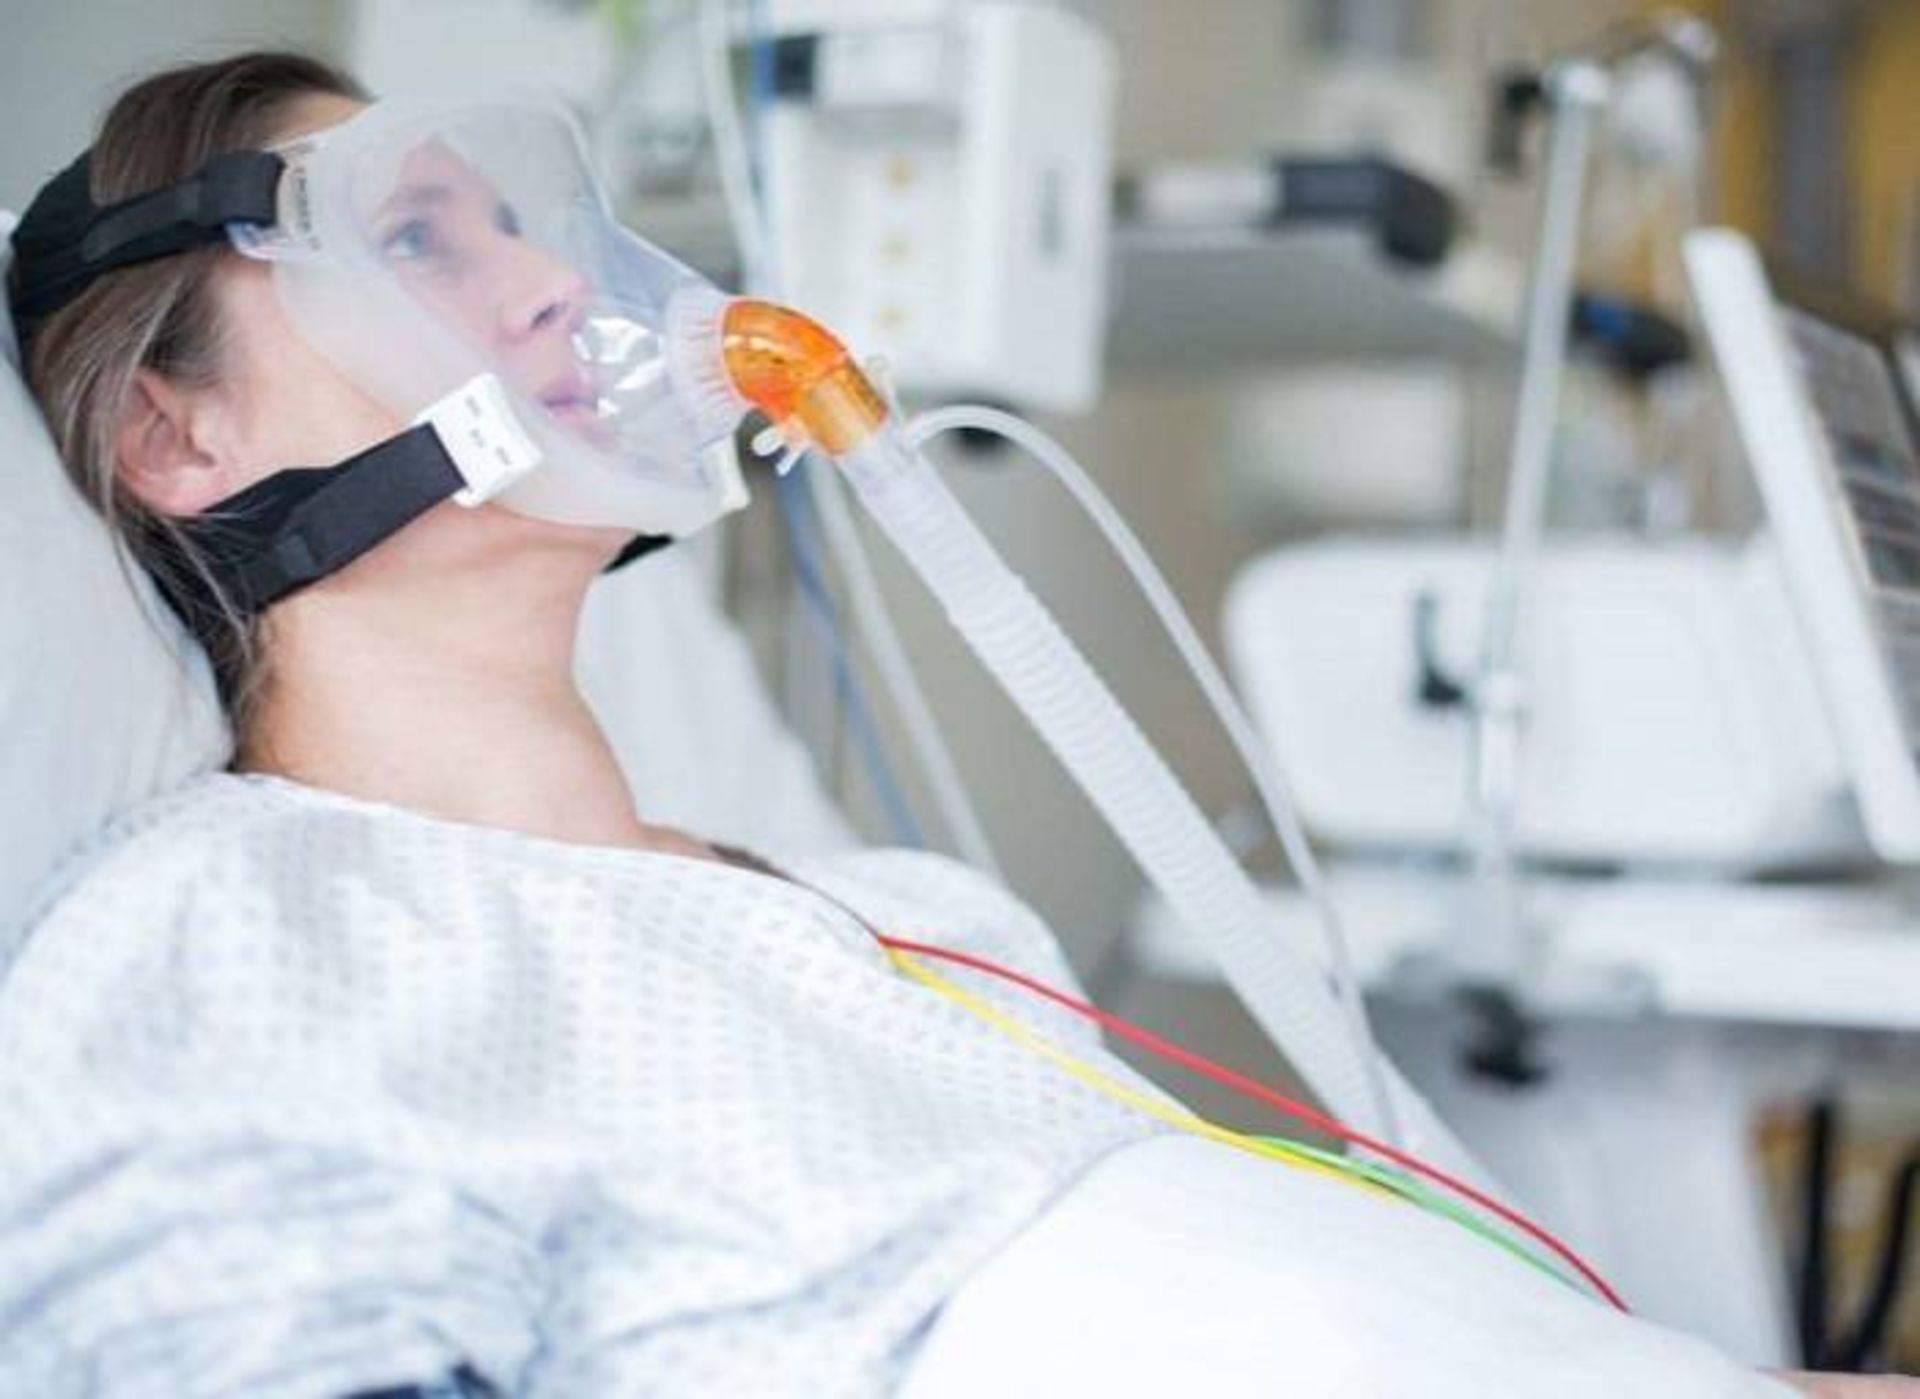 ونتیلاتور با ماسک نوعی دستگاه تنفس مصنوعی